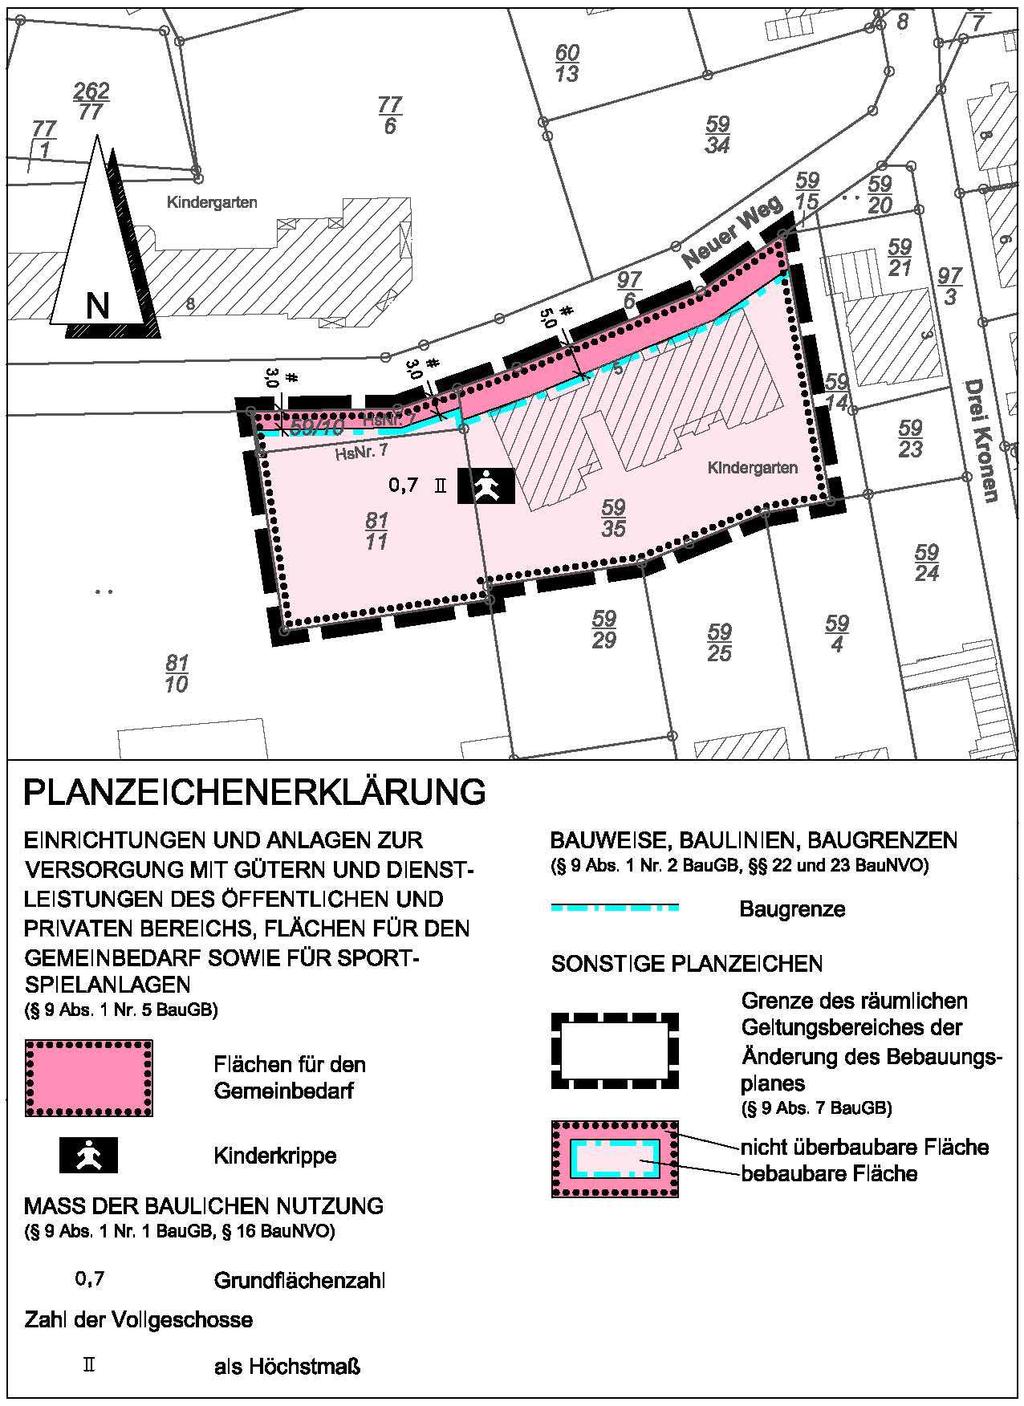 - 2 - Bebauungsplan Bergen Nr. 6 Bahnhofstraße, 5. Änderung, M 1 : 1.000 Gesetzesbezüge: Baugesetzbuch (BauGB) vom 23.9.2004 (BGBl. I Seite 2414) - zuletzt geändert am 15.7.2014 (BGBl.